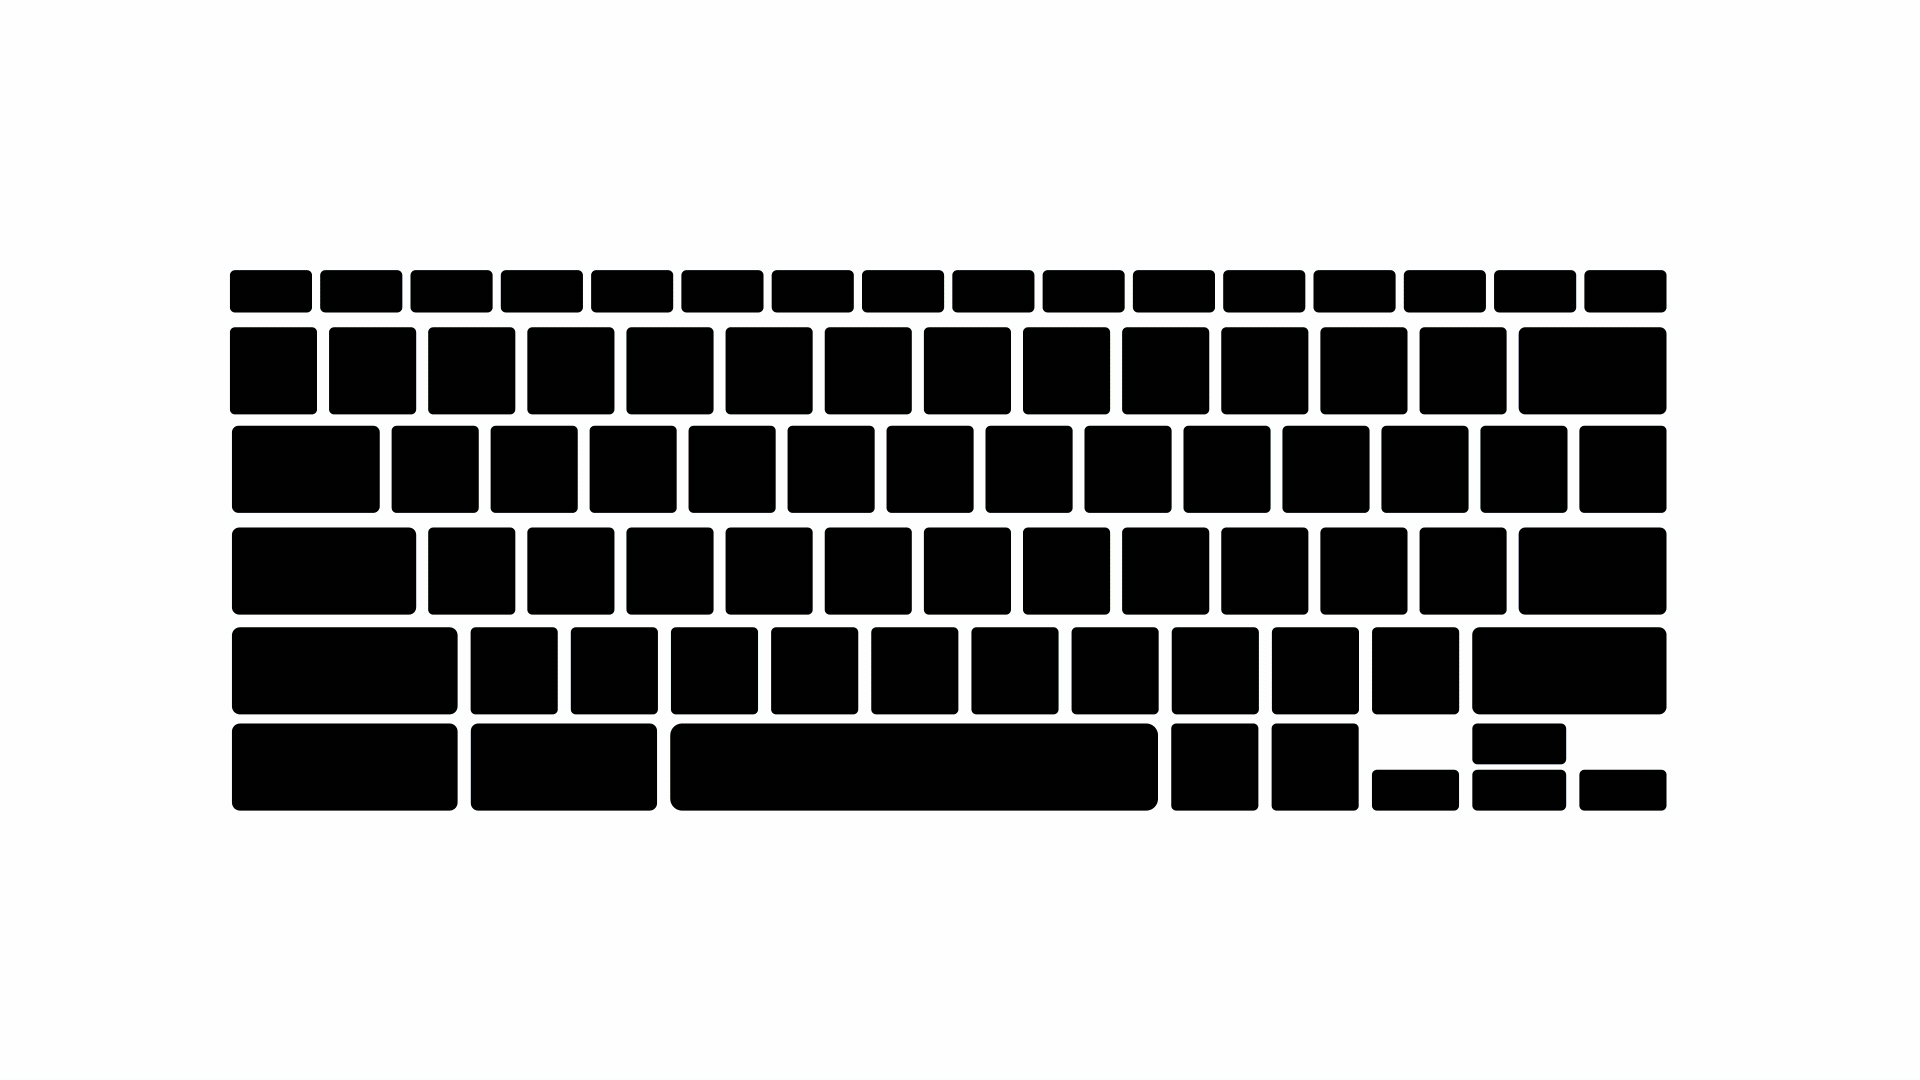 Keyboard backlight illustration